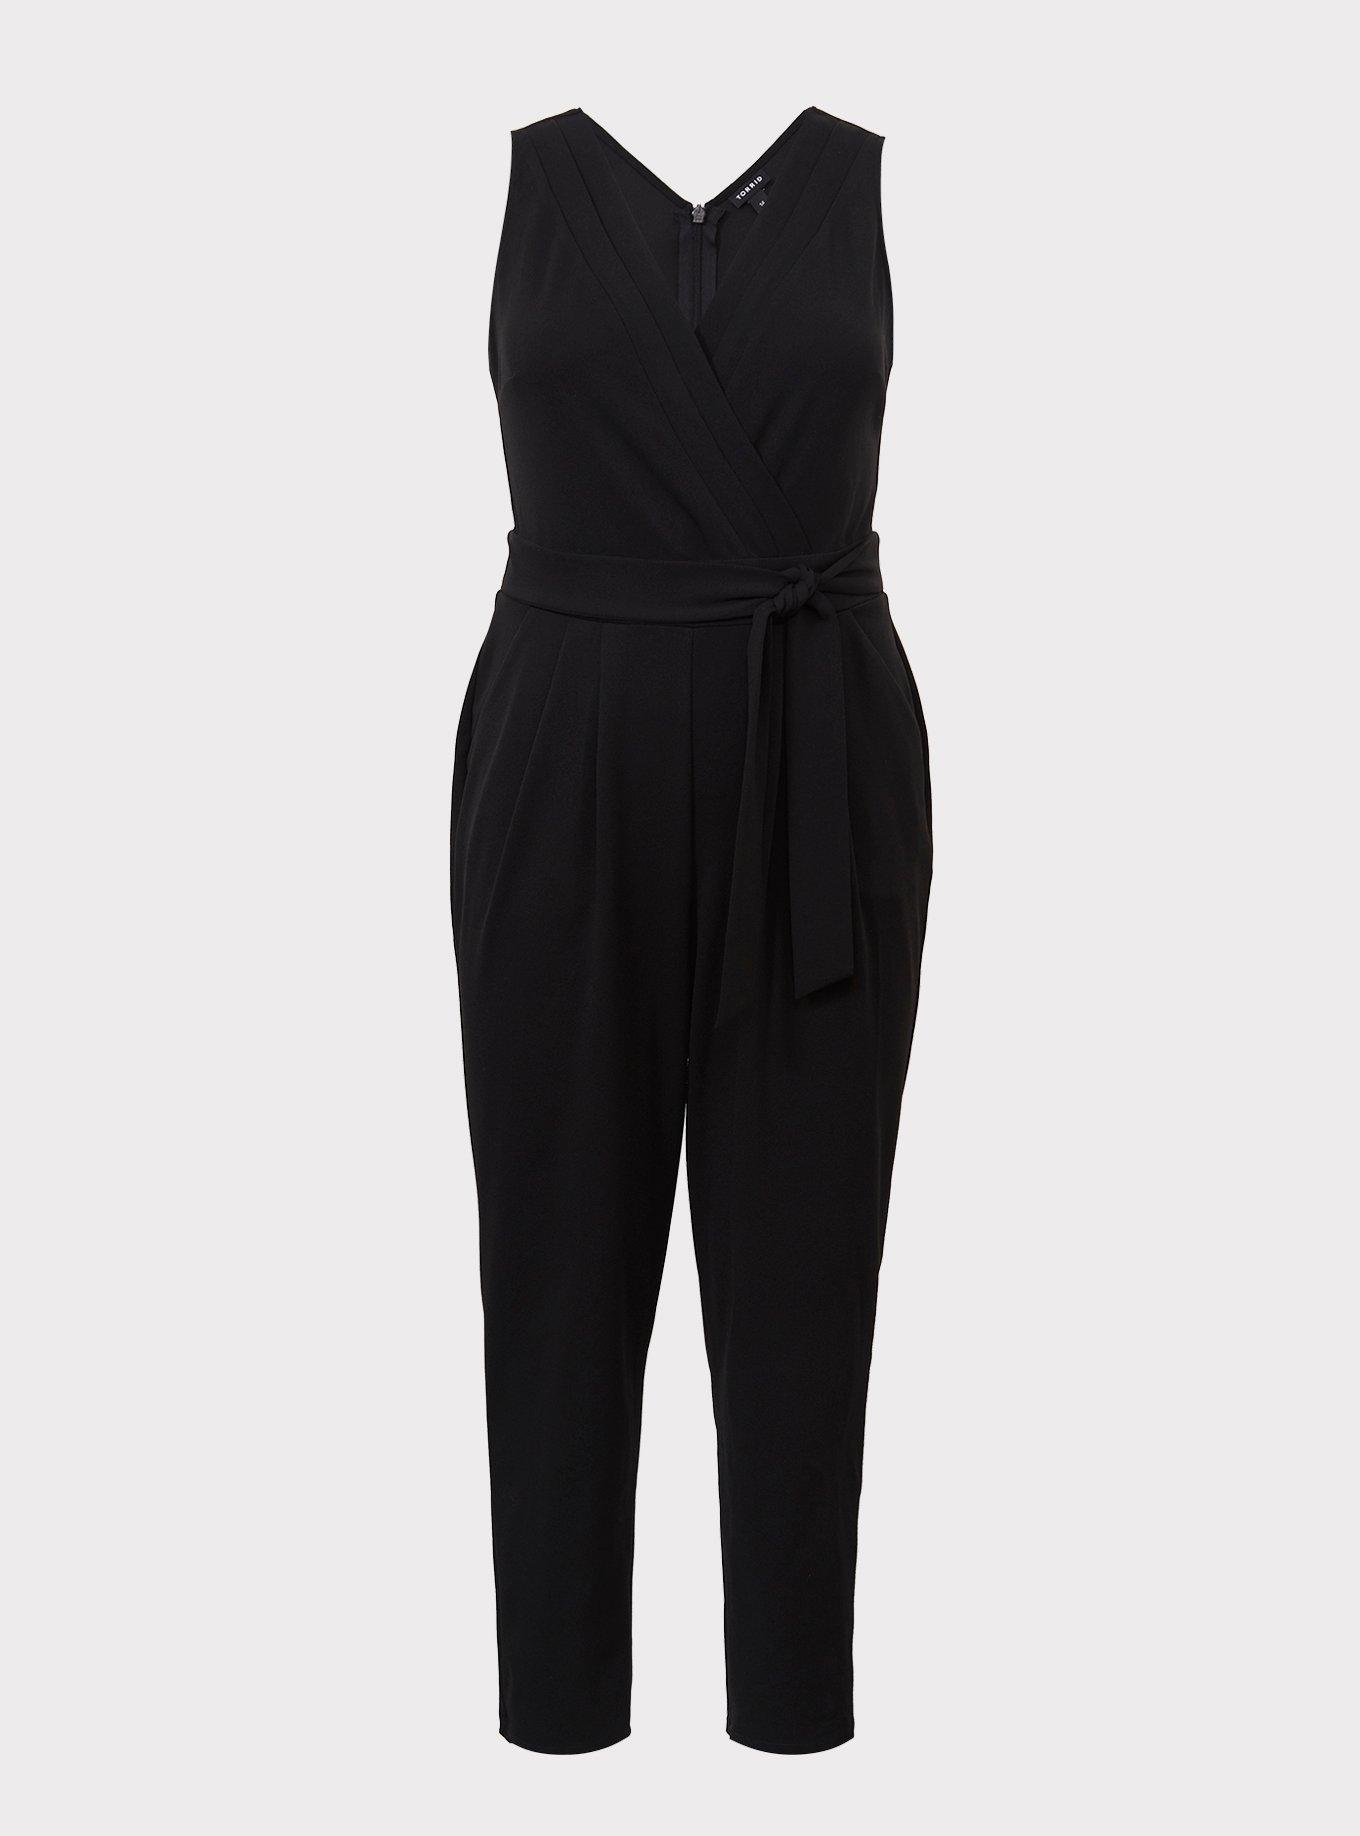 Plus Size - Black Sleeveless Jumpsuit - Torrid